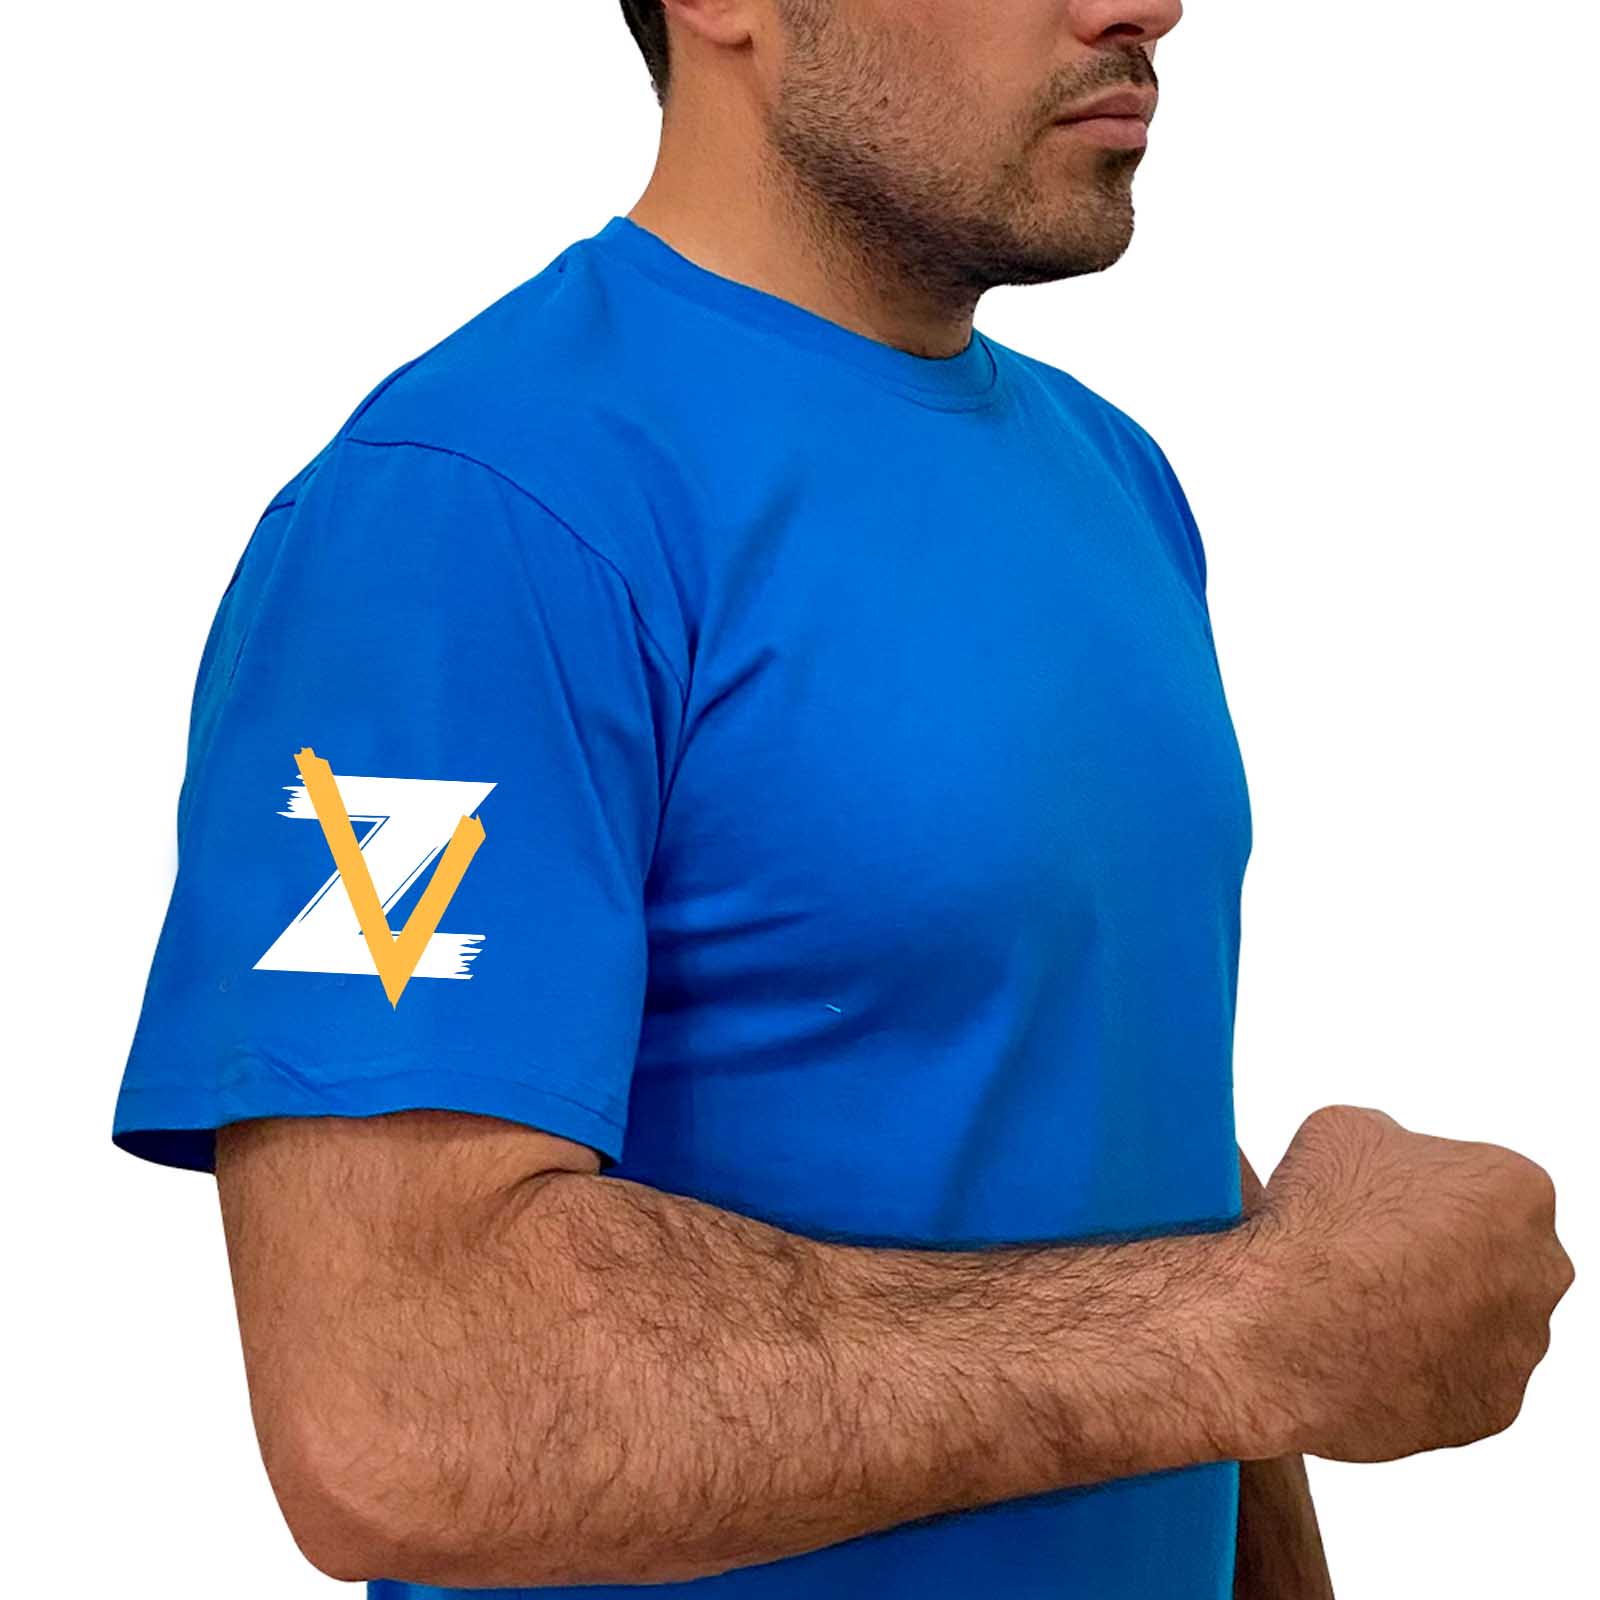 Купить трикотажную стильную футболку Z V с доставкой